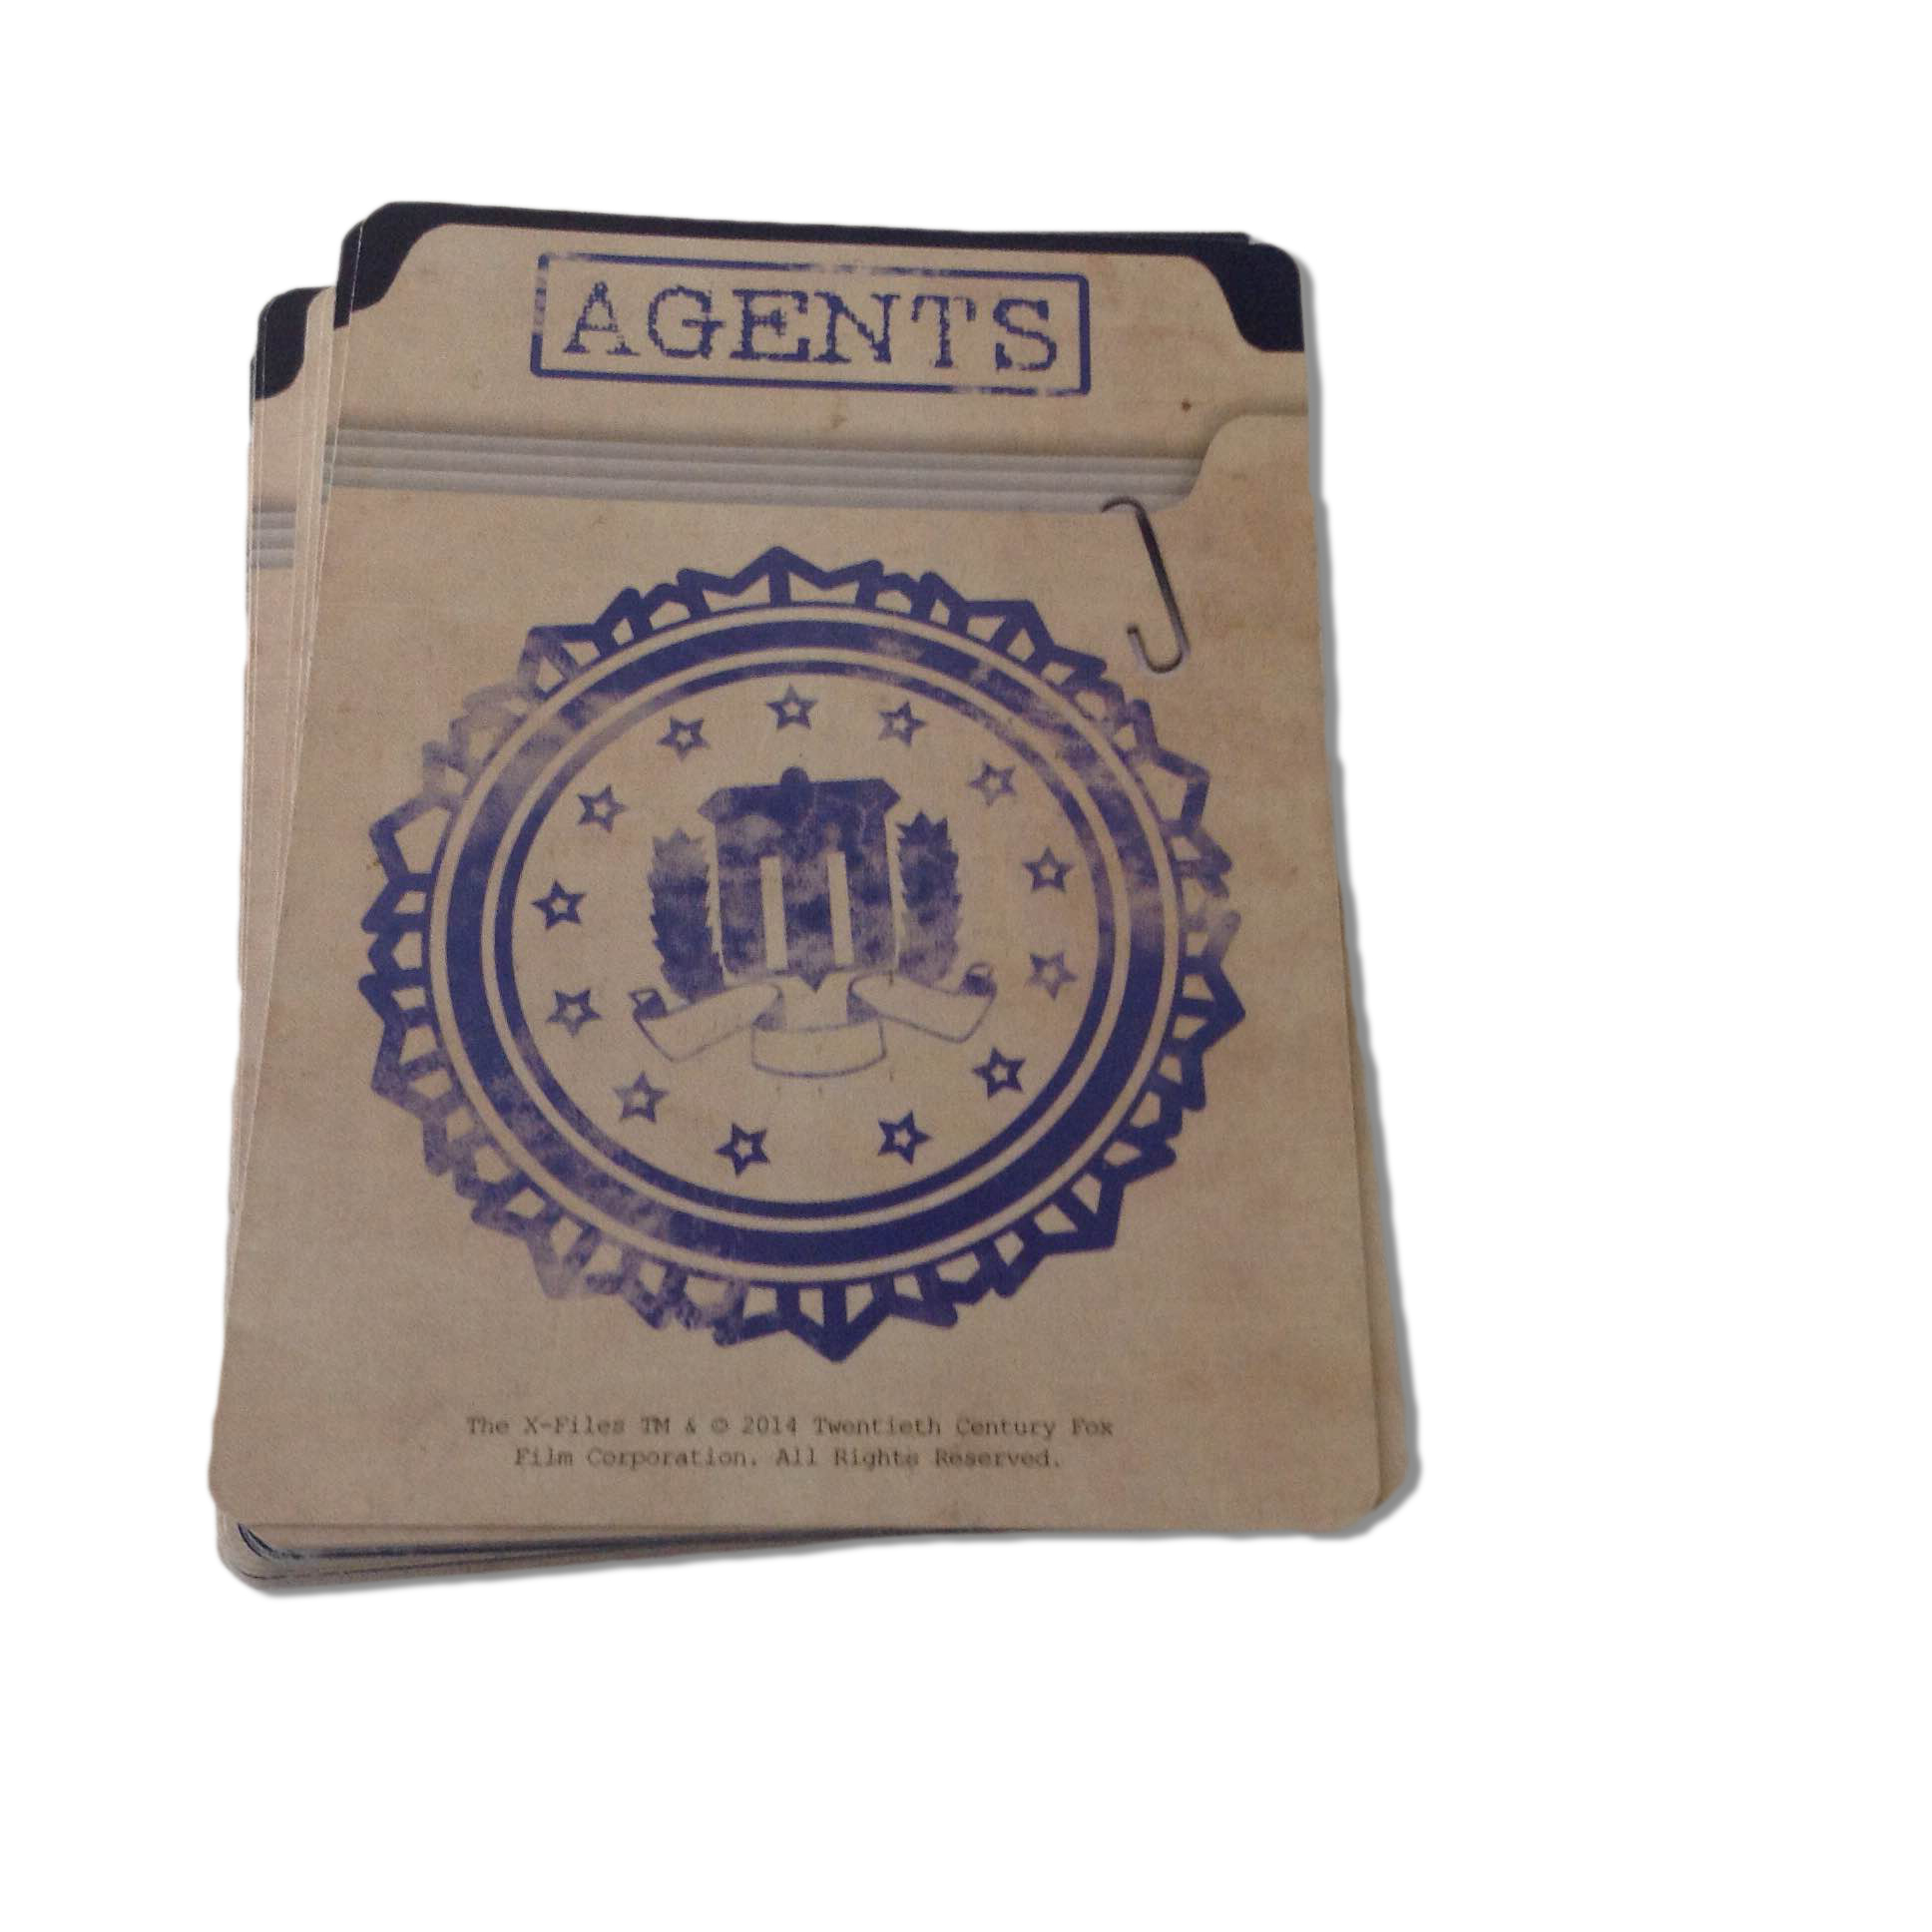 Agent-kortene bruges til opklaring af X-filerne. 